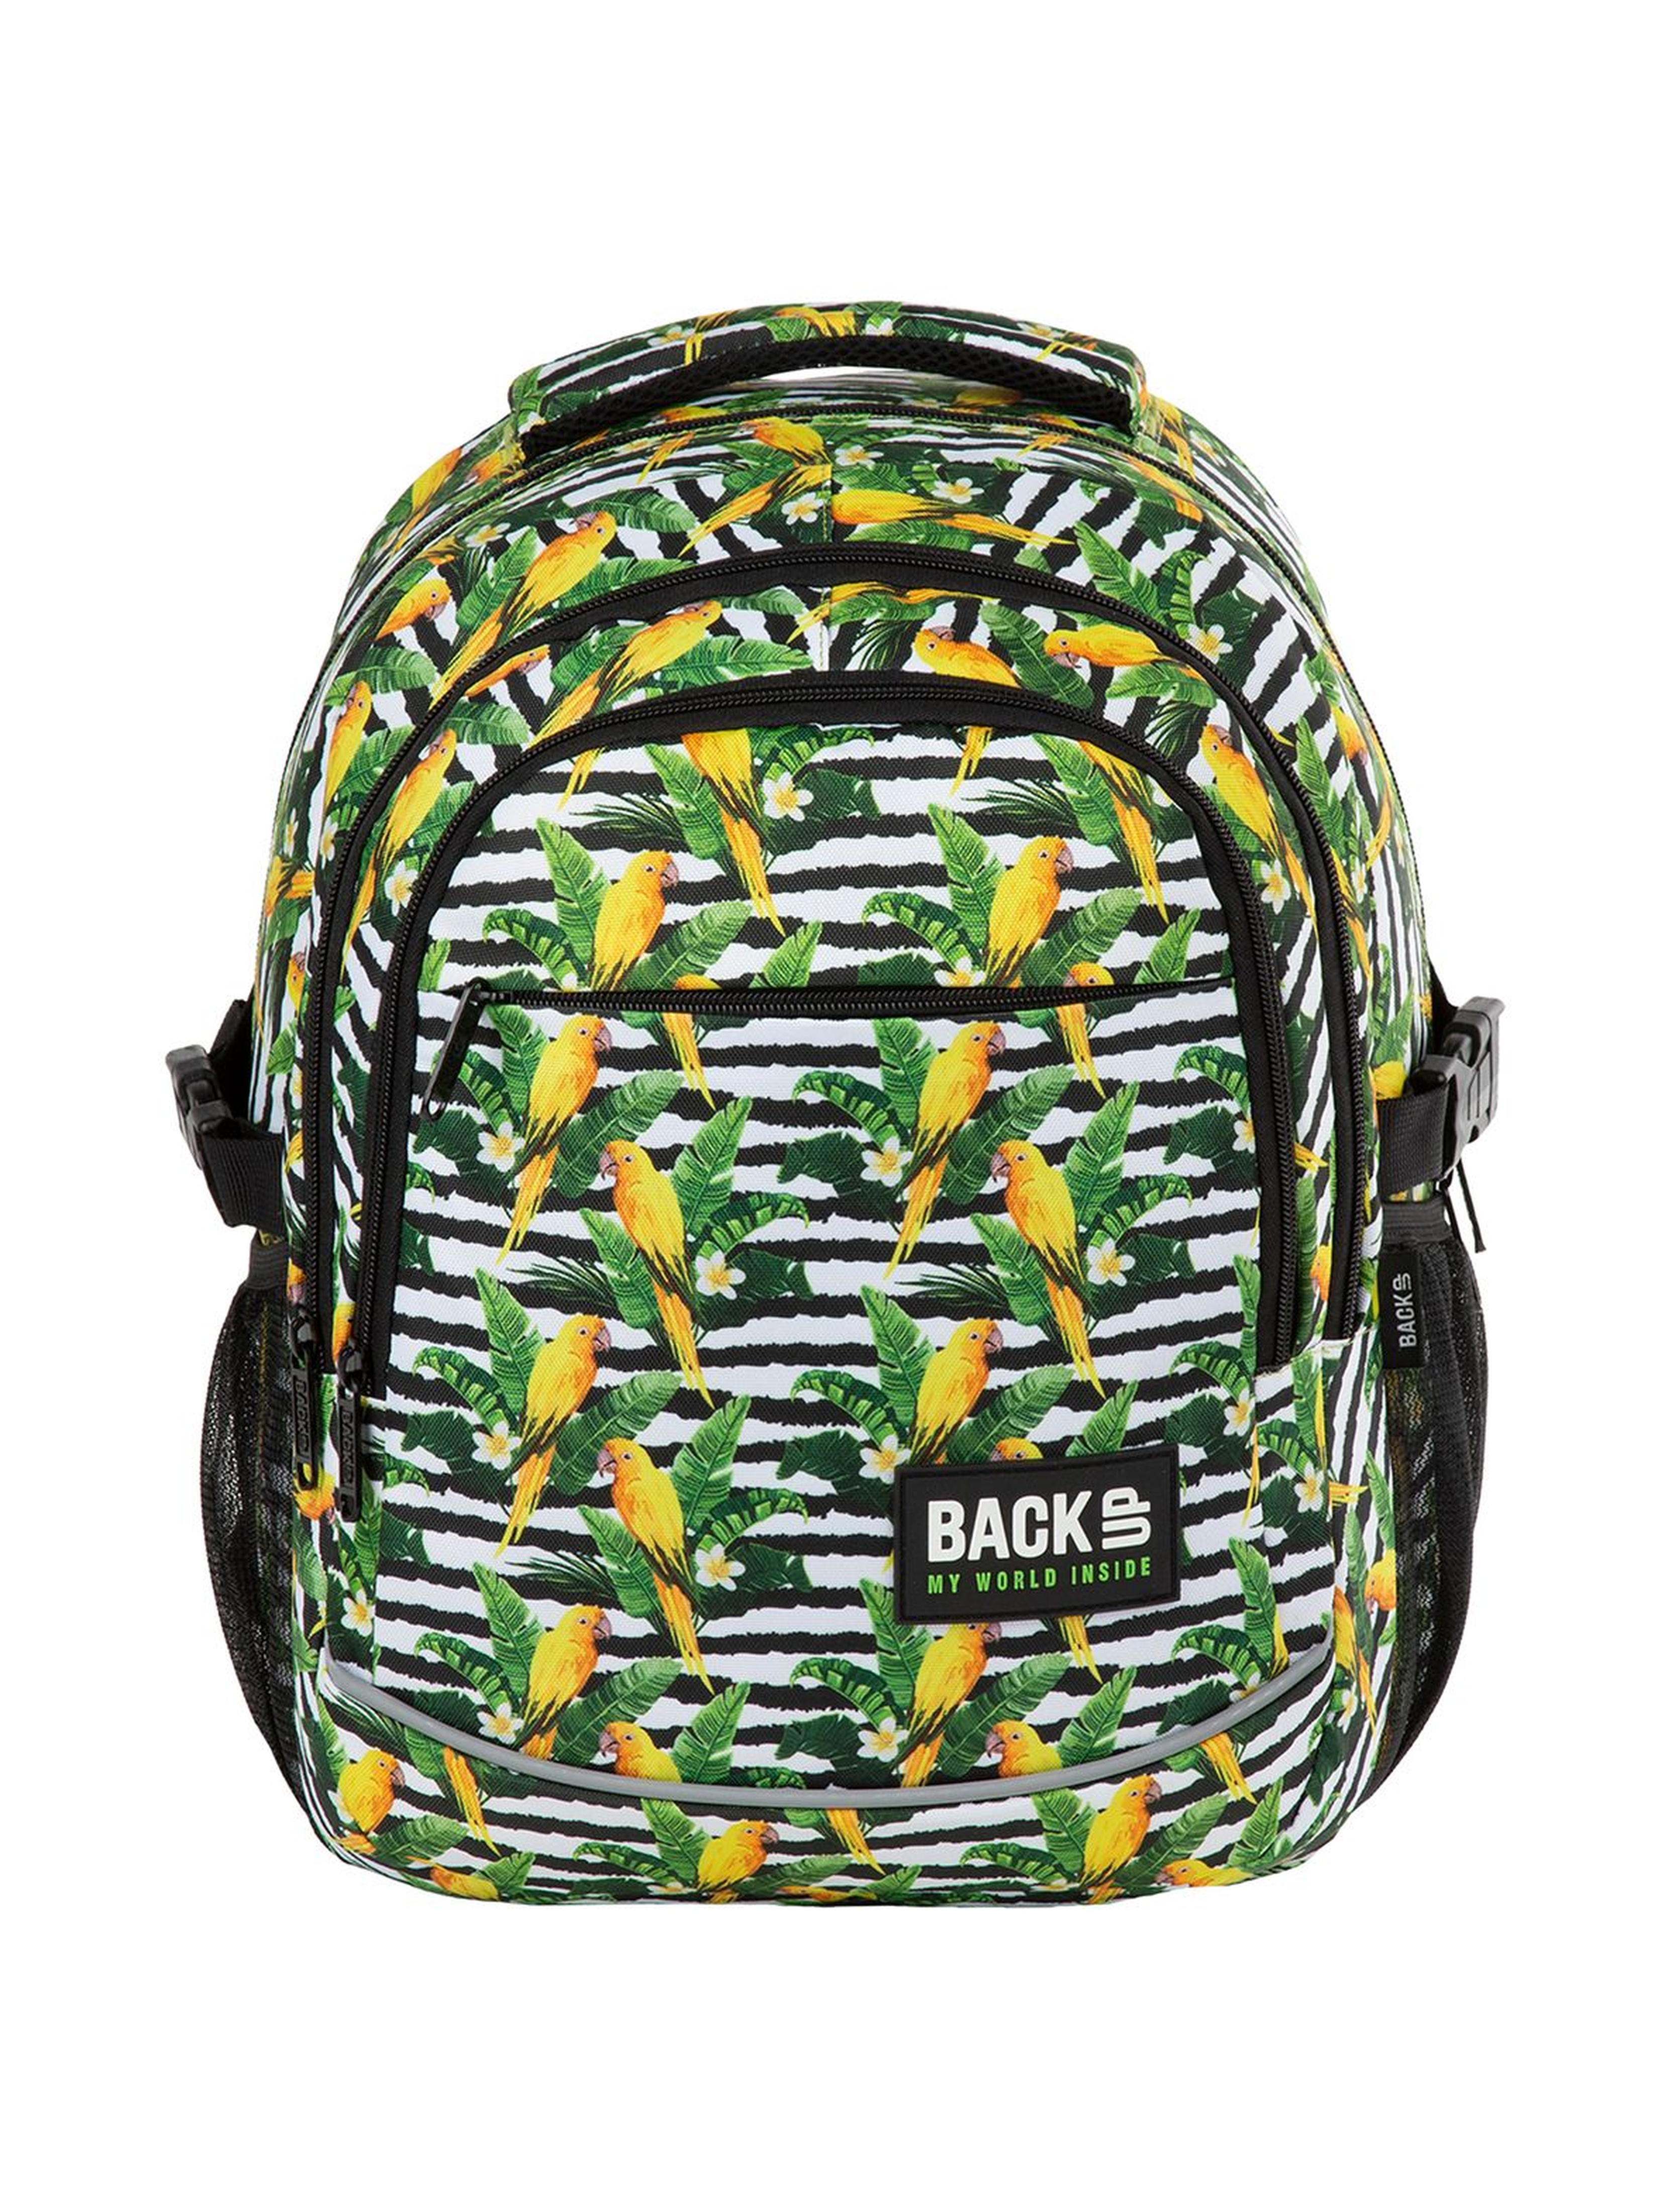 Plecak szkolny BackUp  w papugi- 3komorowy